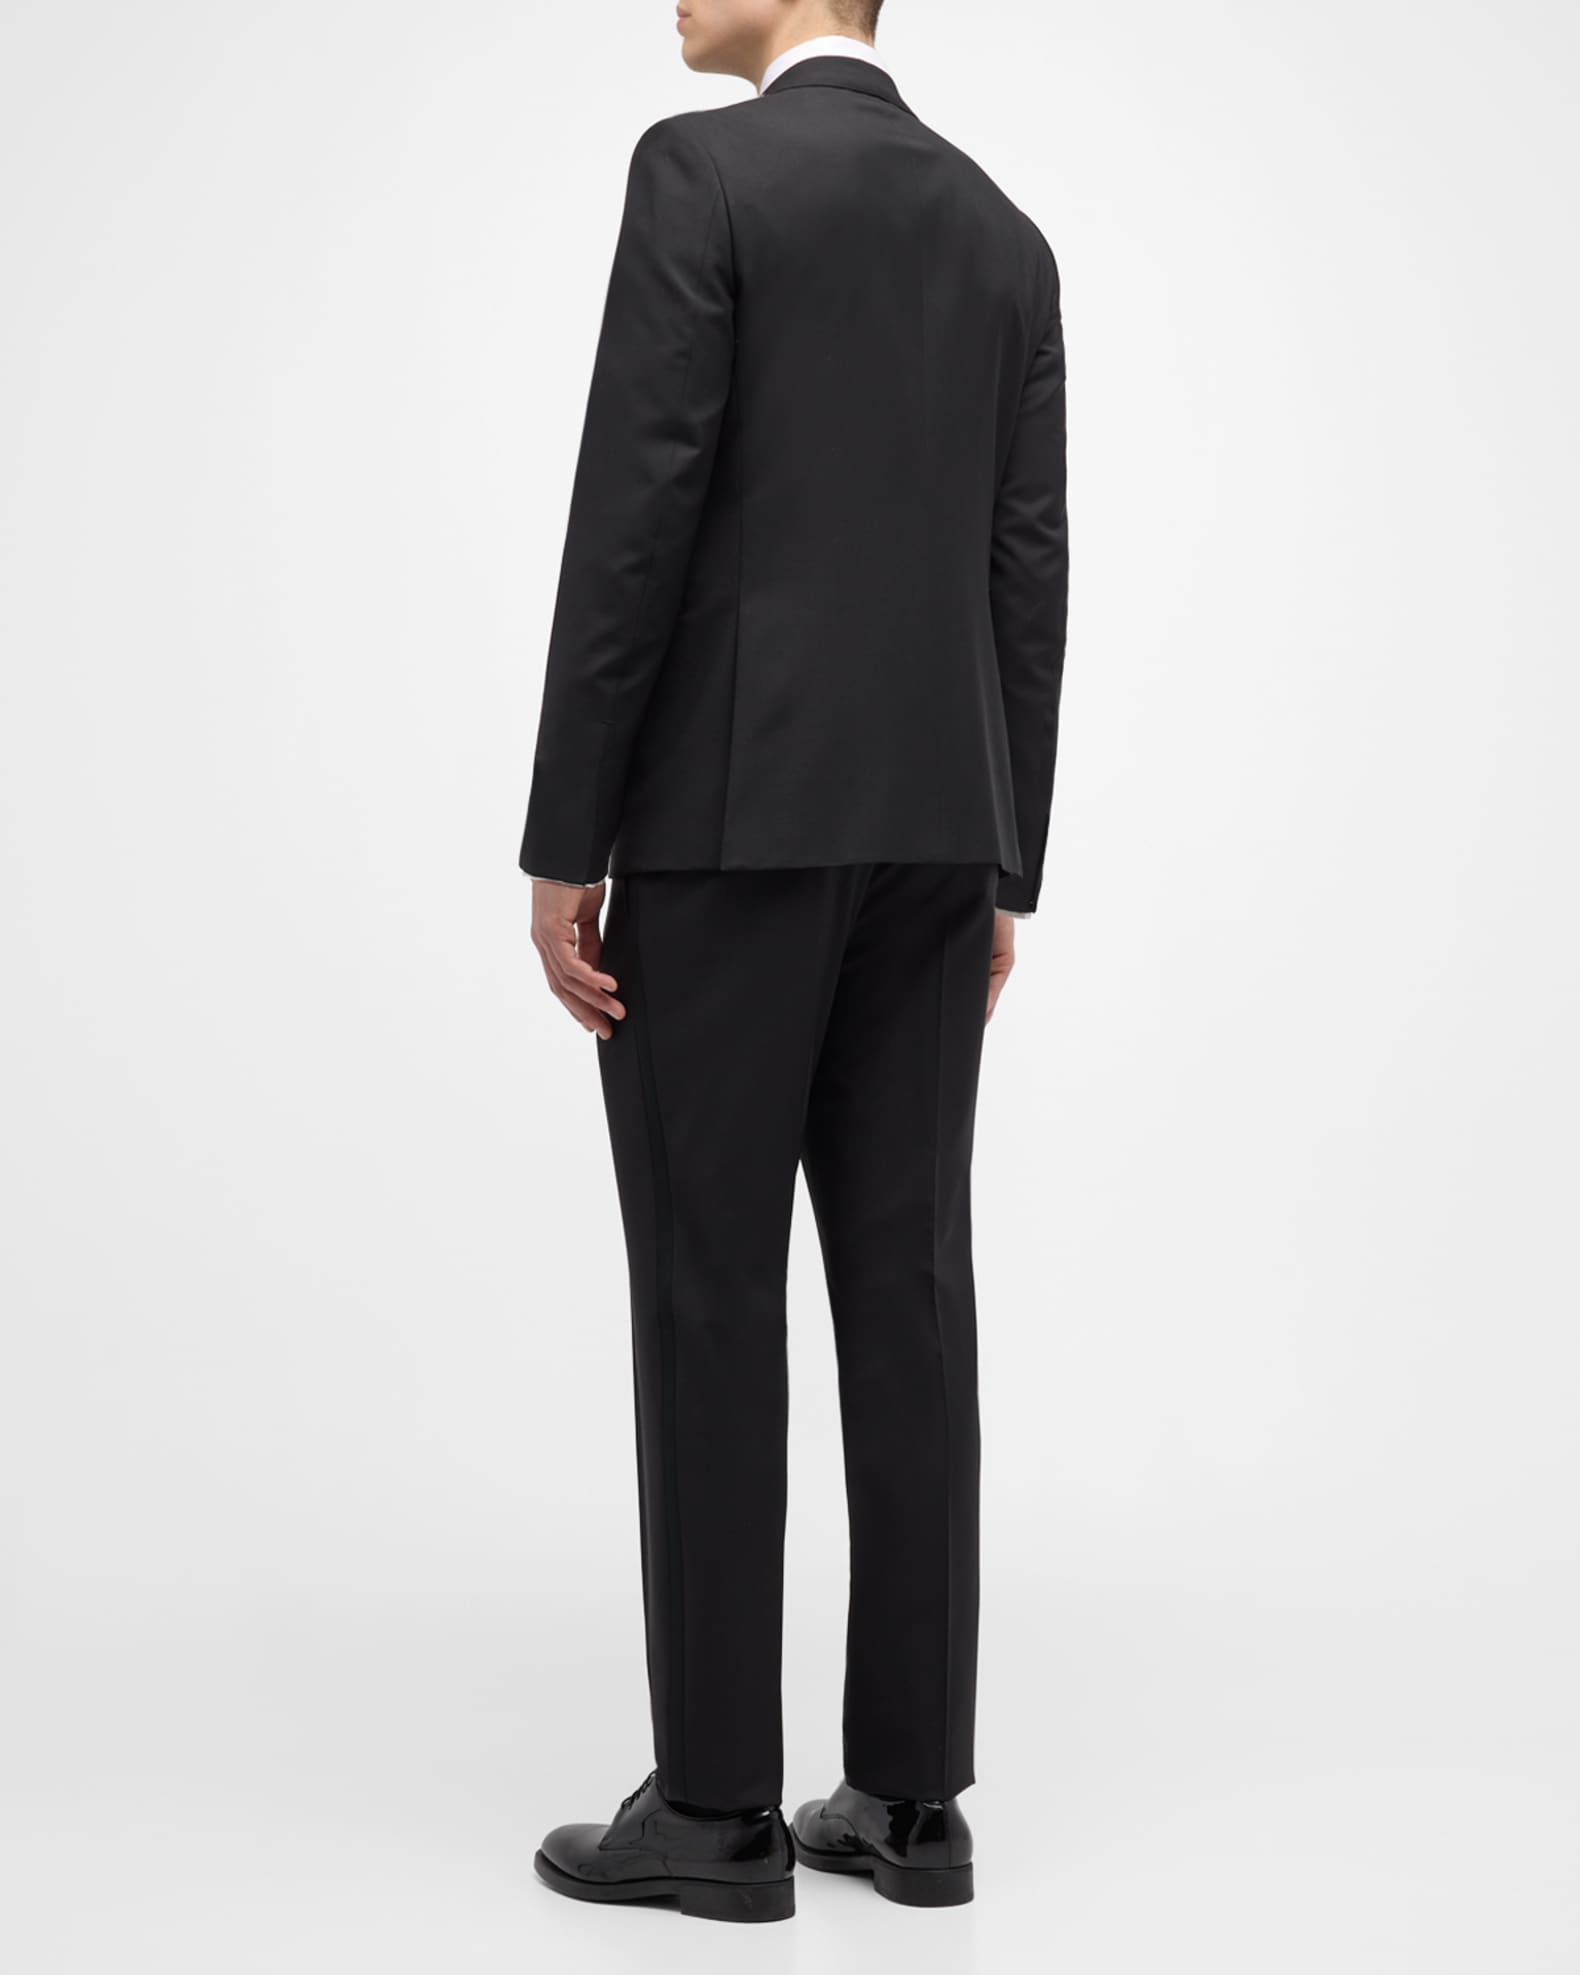 ZEGNA Men's Wool-Mohair Solid Tuxedo | Neiman Marcus